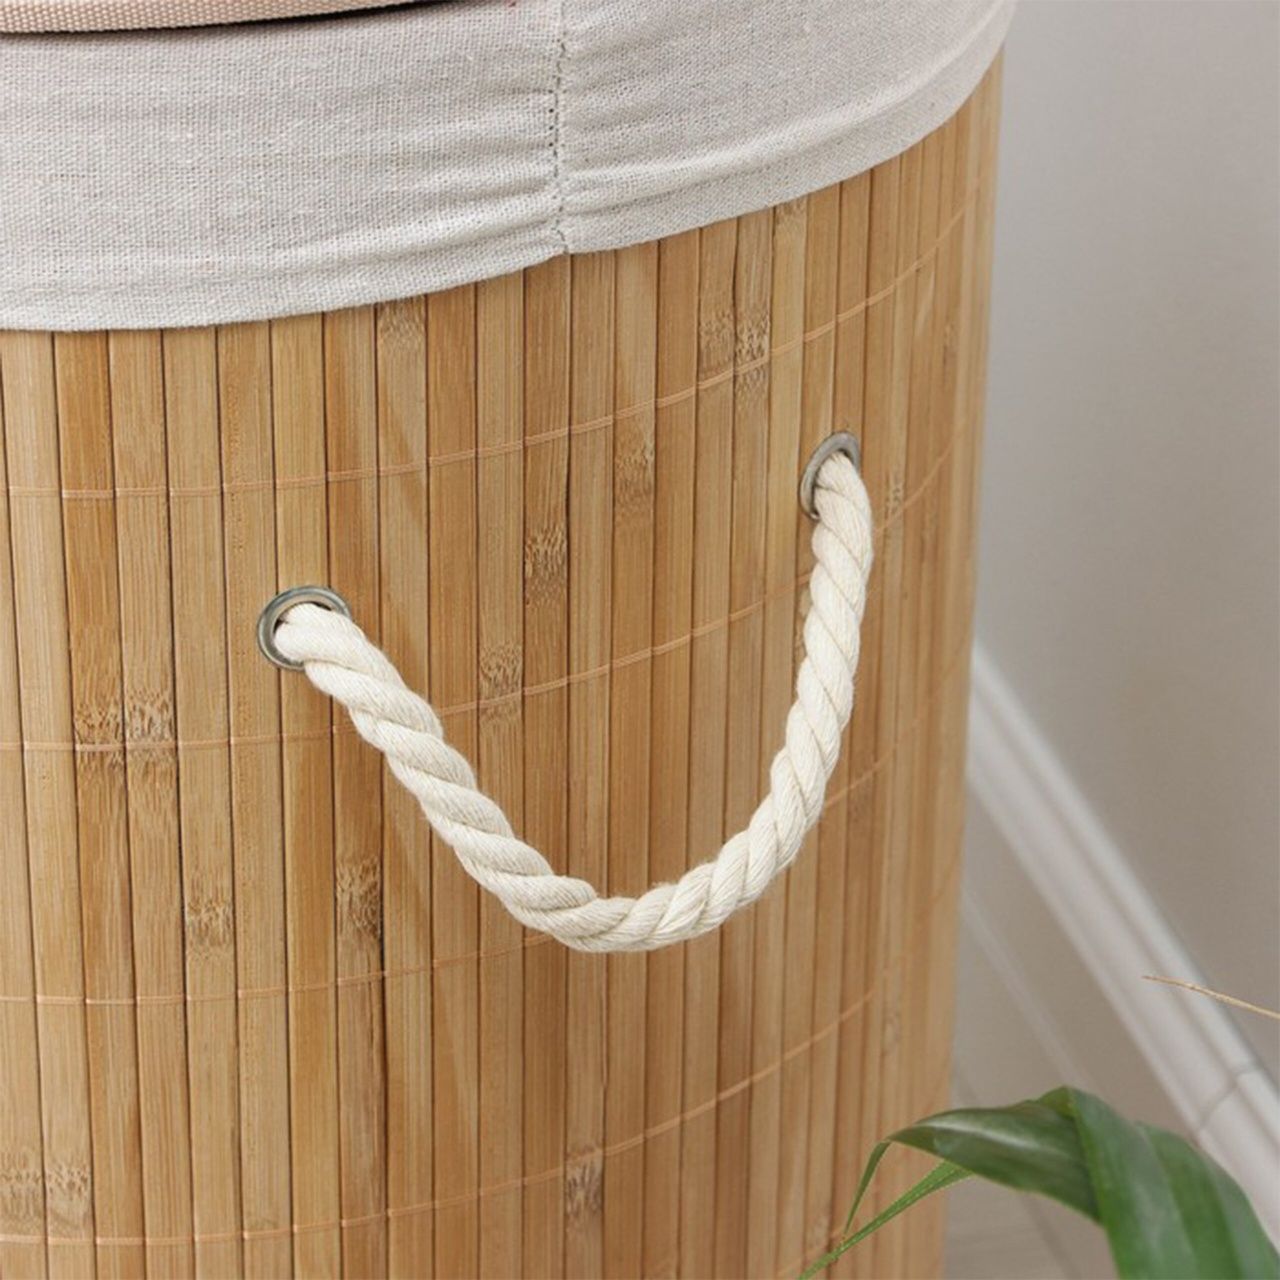 Kosz bambusowy kosz na bieliznę pranie